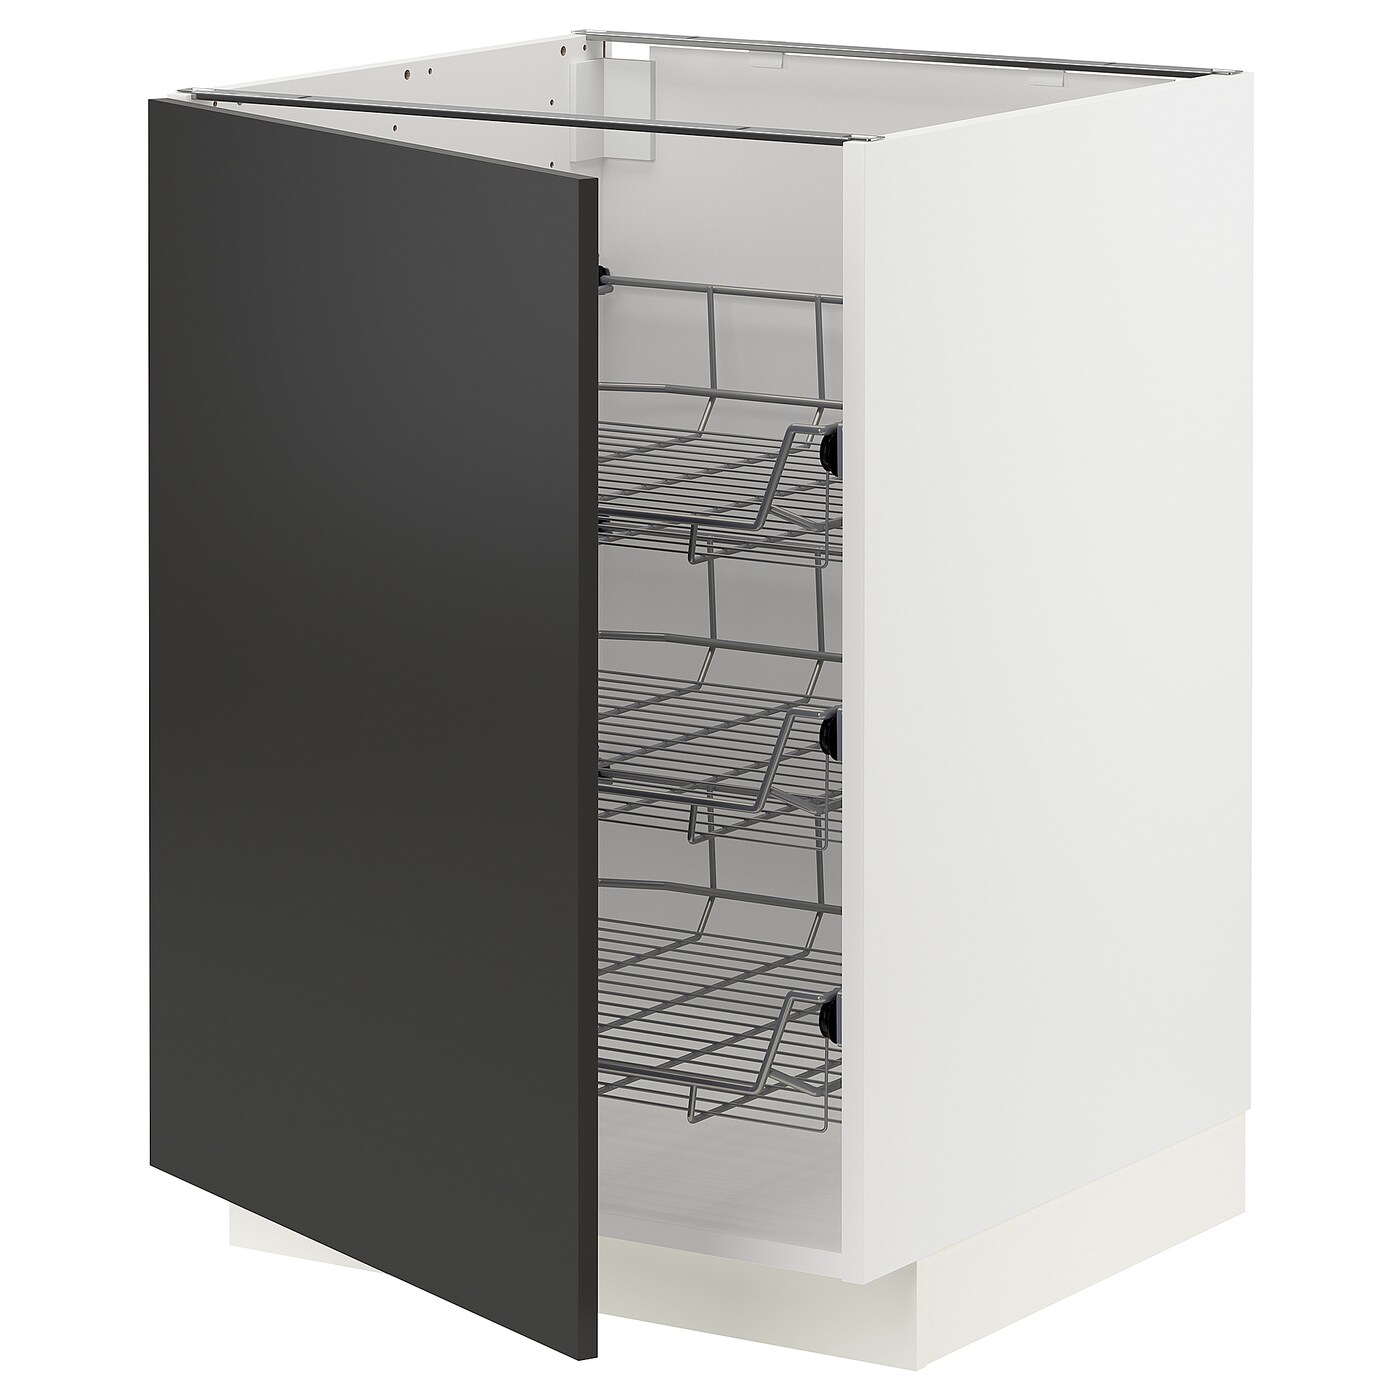 Напольный шкаф - METOD IKEA/ МЕТОД ИКЕА,  88х60 см, черный/белый